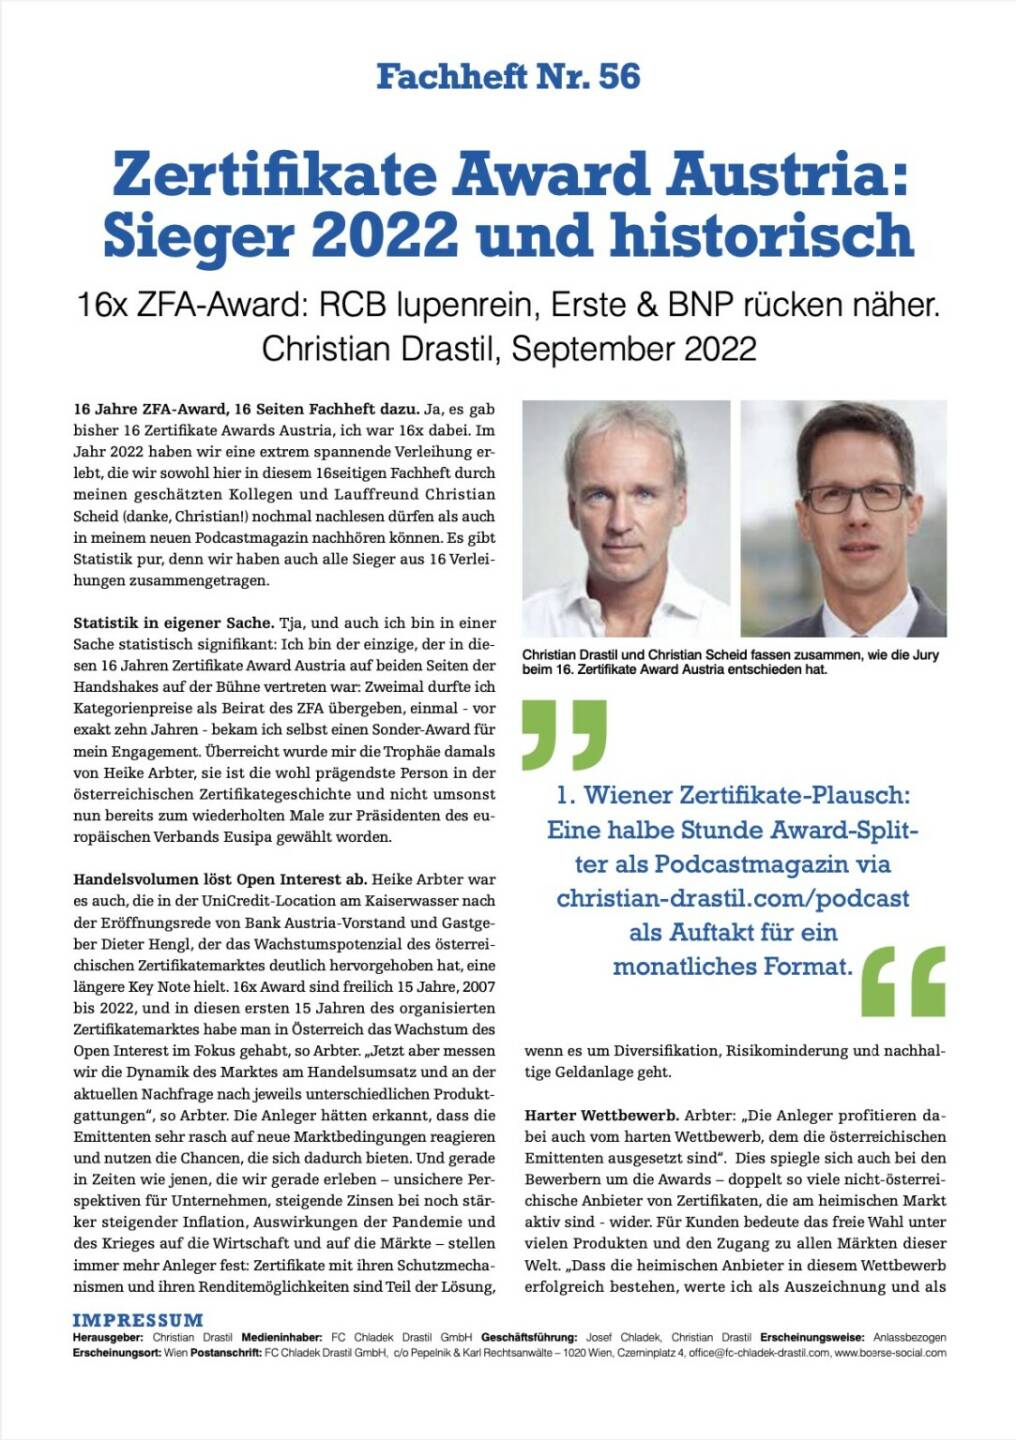 Fachheft 56 - Zertifikate Award Austria: Sieger 2022 und historisch